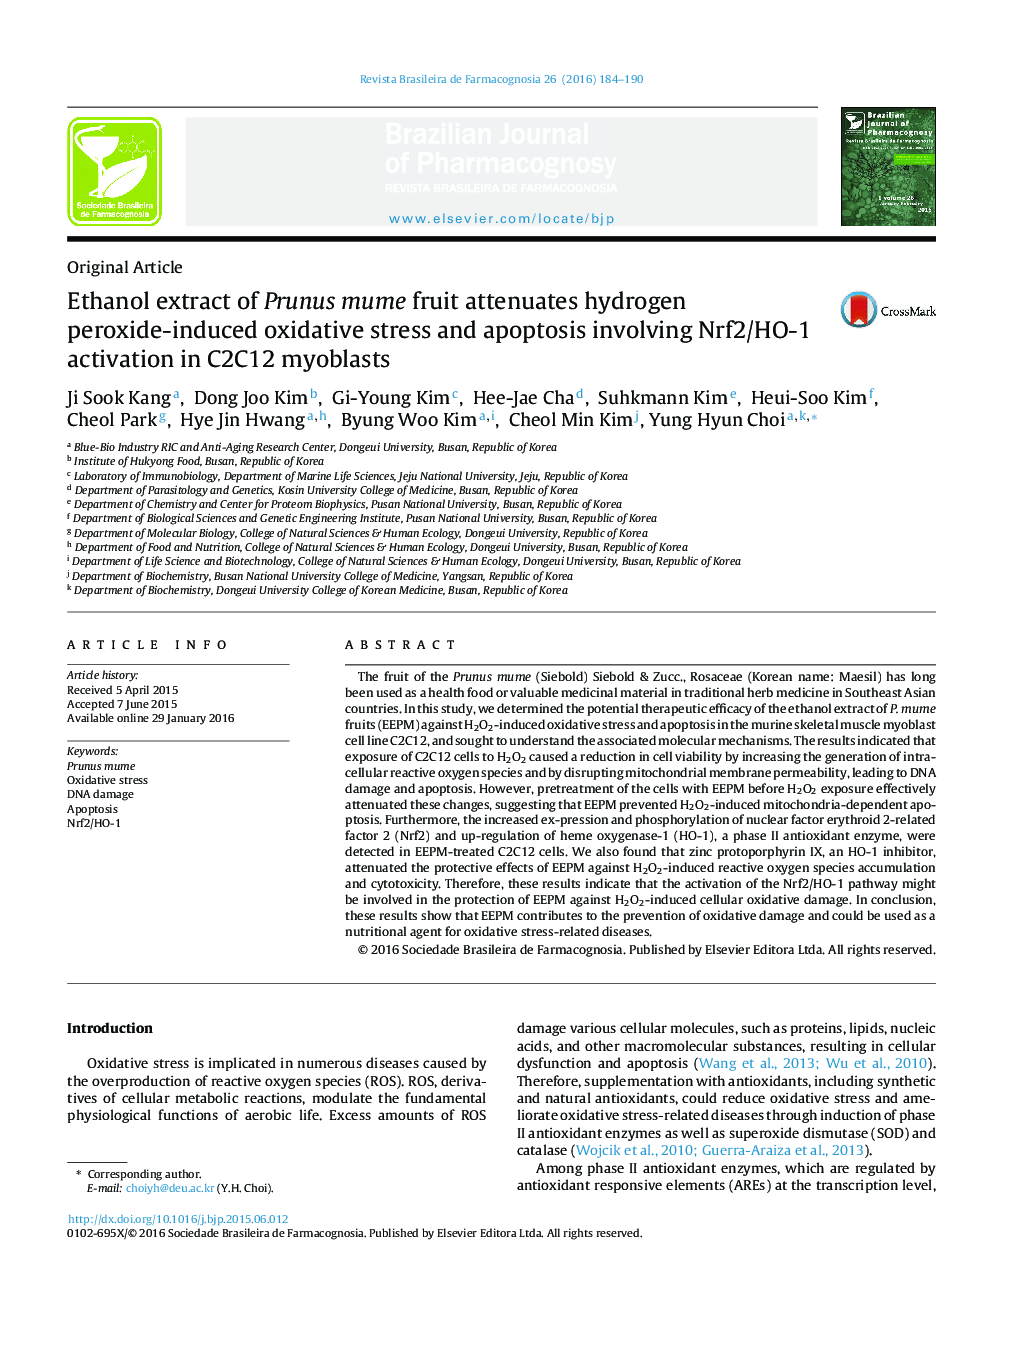 عصاره اتانول میوه Prunus mume سبب کاهش استرس اکسیداتیو ناشی از پراکسید هیدروژن و آپوپتوز شامل فعال سازی Nrf2 / HO-1 در میوبلاست های C2C12 می شود.